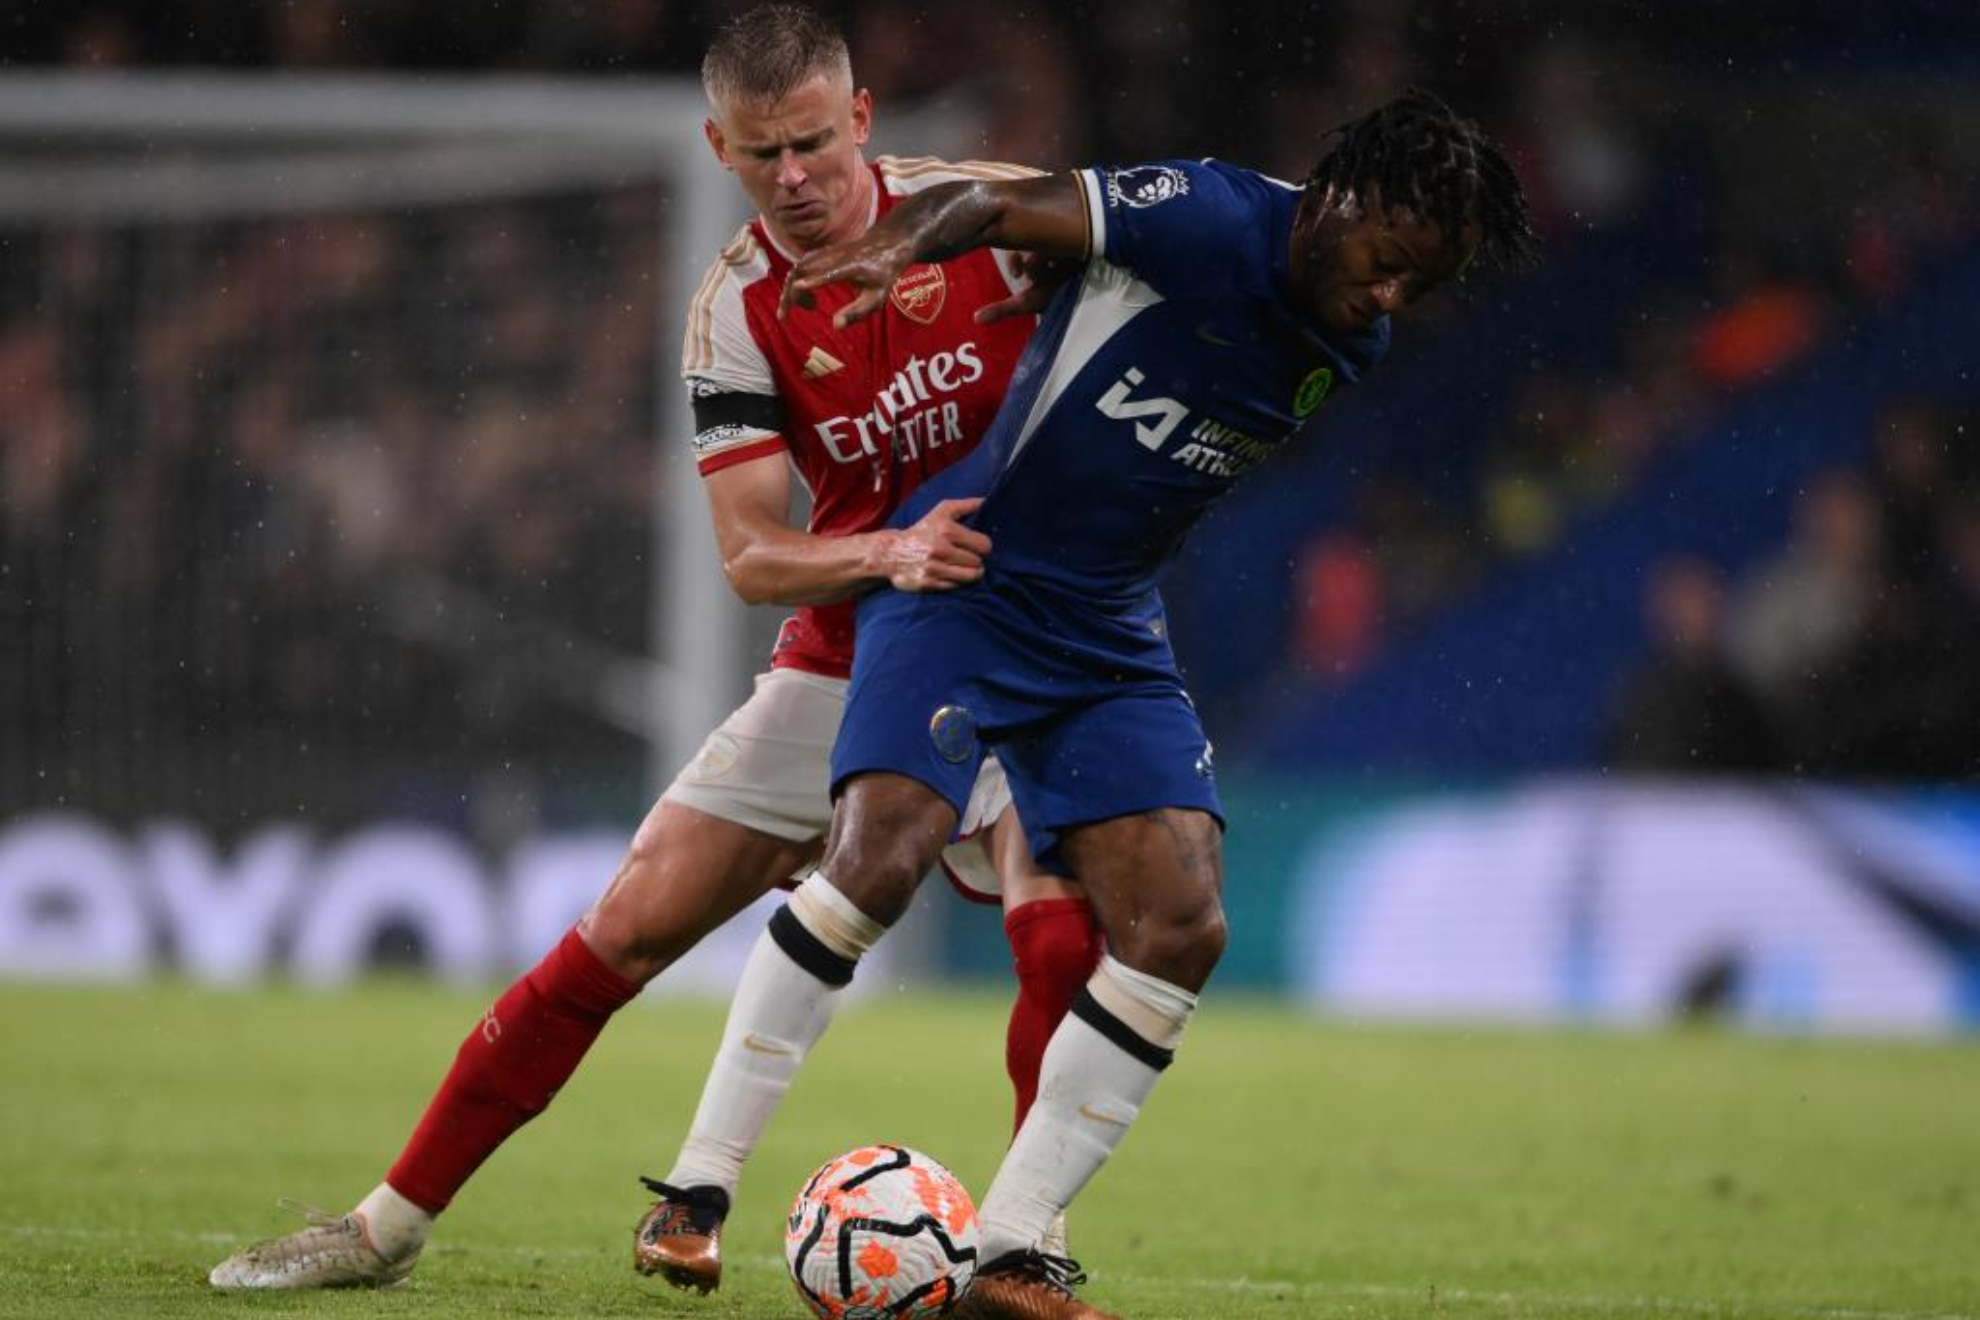 El Arsenal resurge y rasca un empate en los últimos minutos en Stamford Bridge